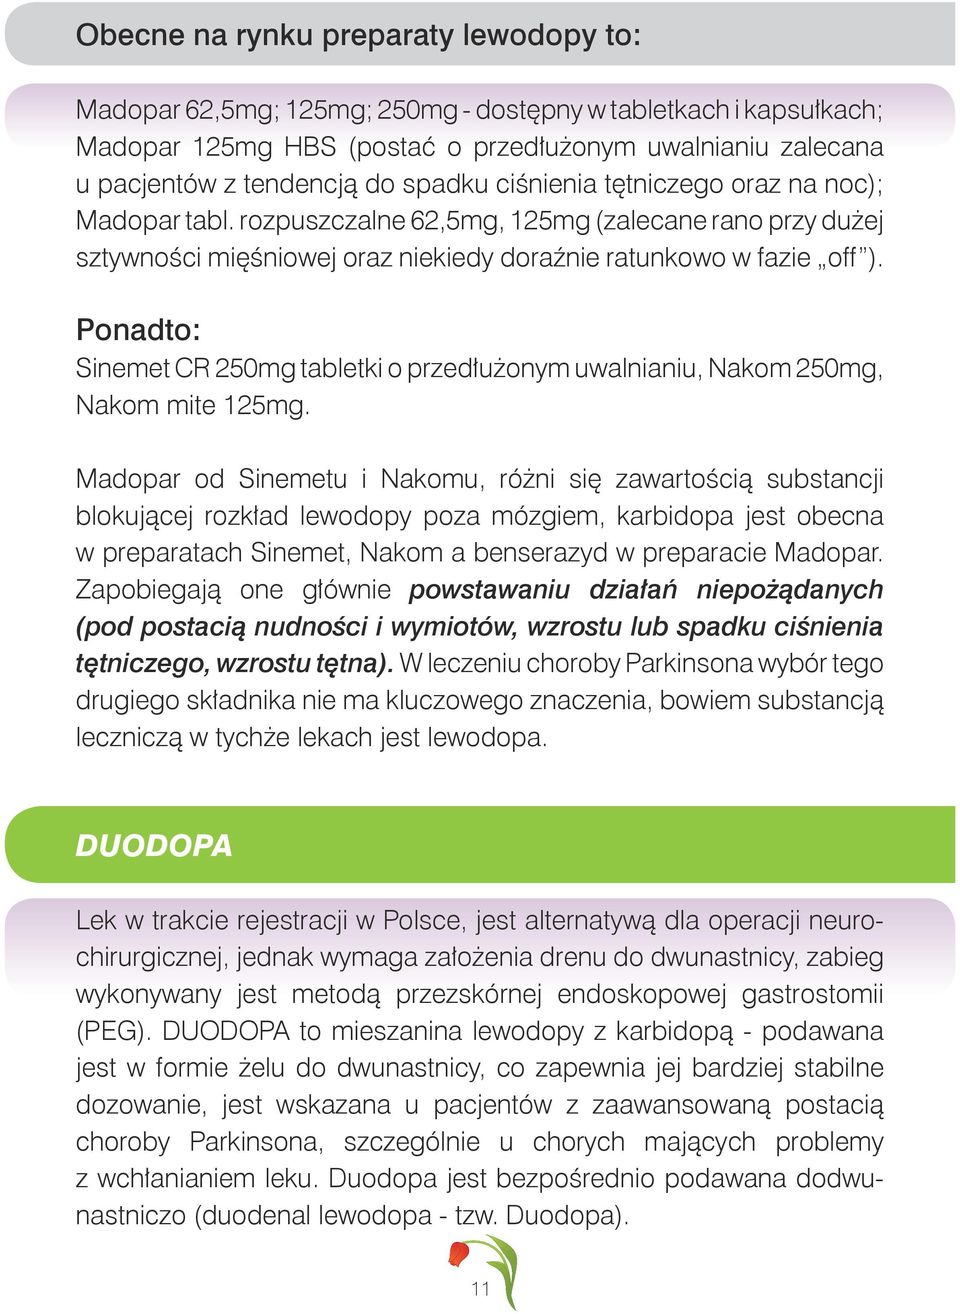 Ponadto: Sinemet CR 250mg tabletki o przedłużonym uwalnianiu, Nakom 250mg, Nakom mite 125mg.